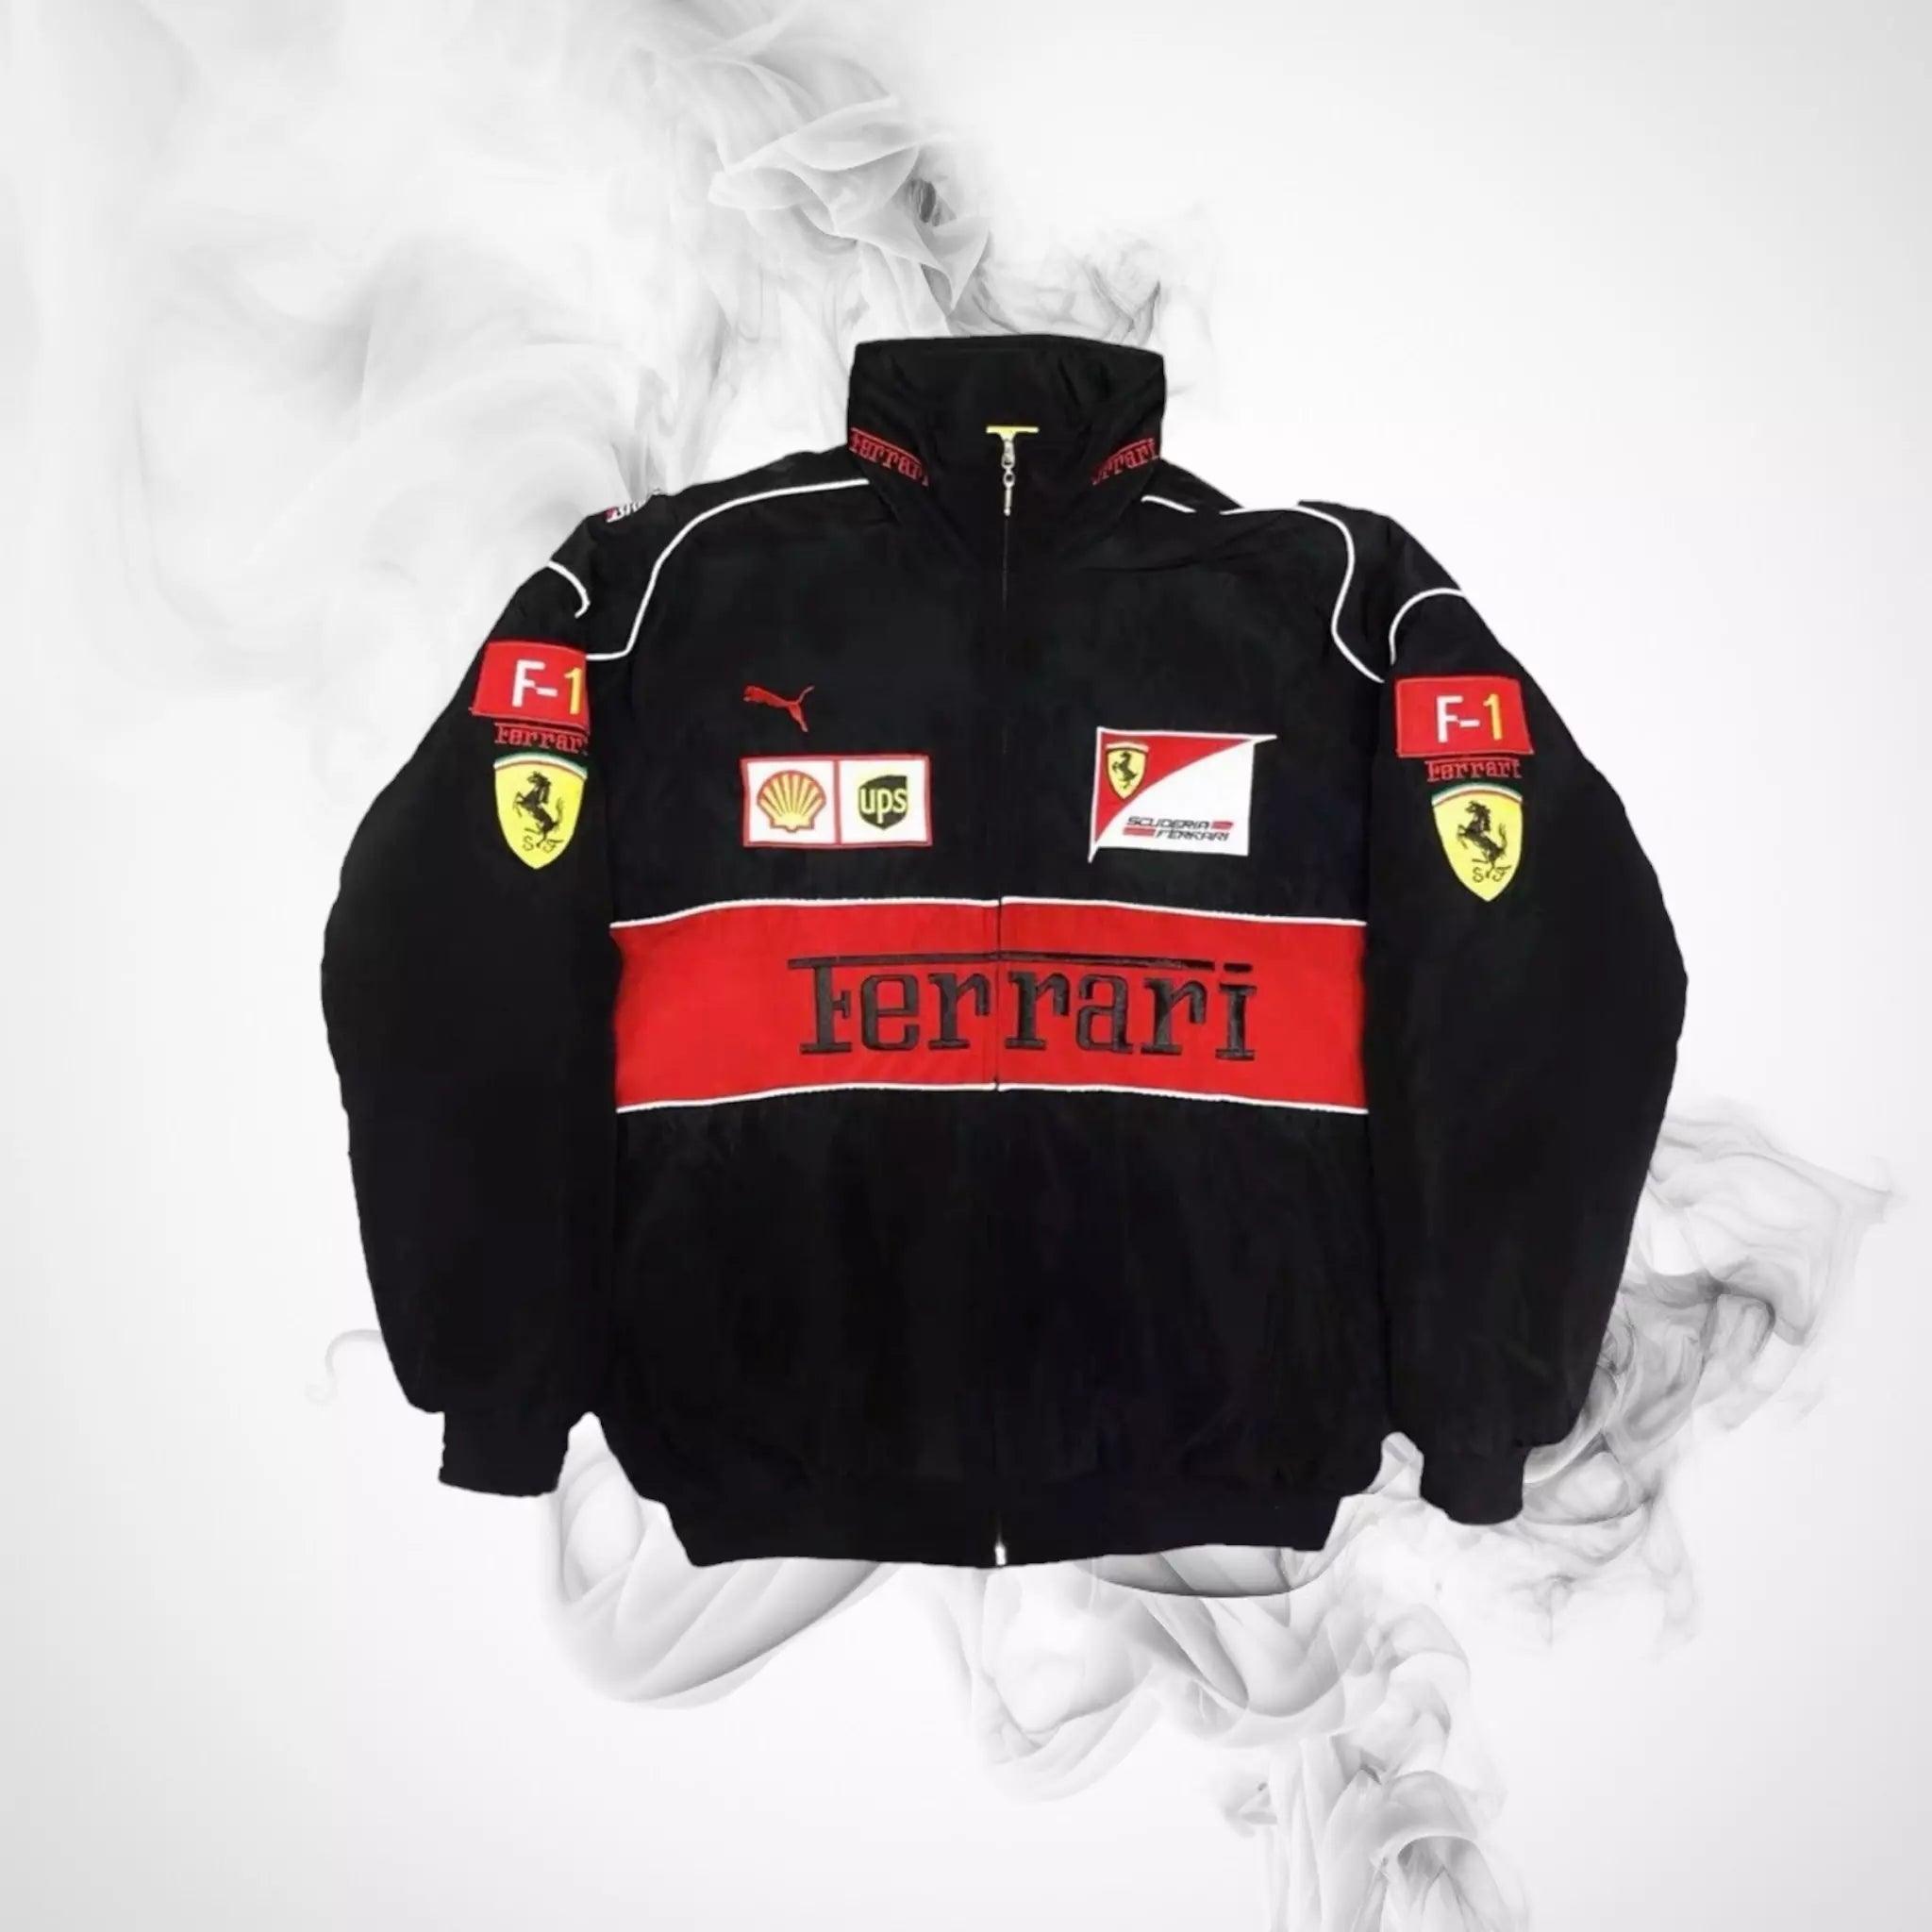 Nascar Jacket Ferrari Vintage Racing Jacket - Dash Racegear 